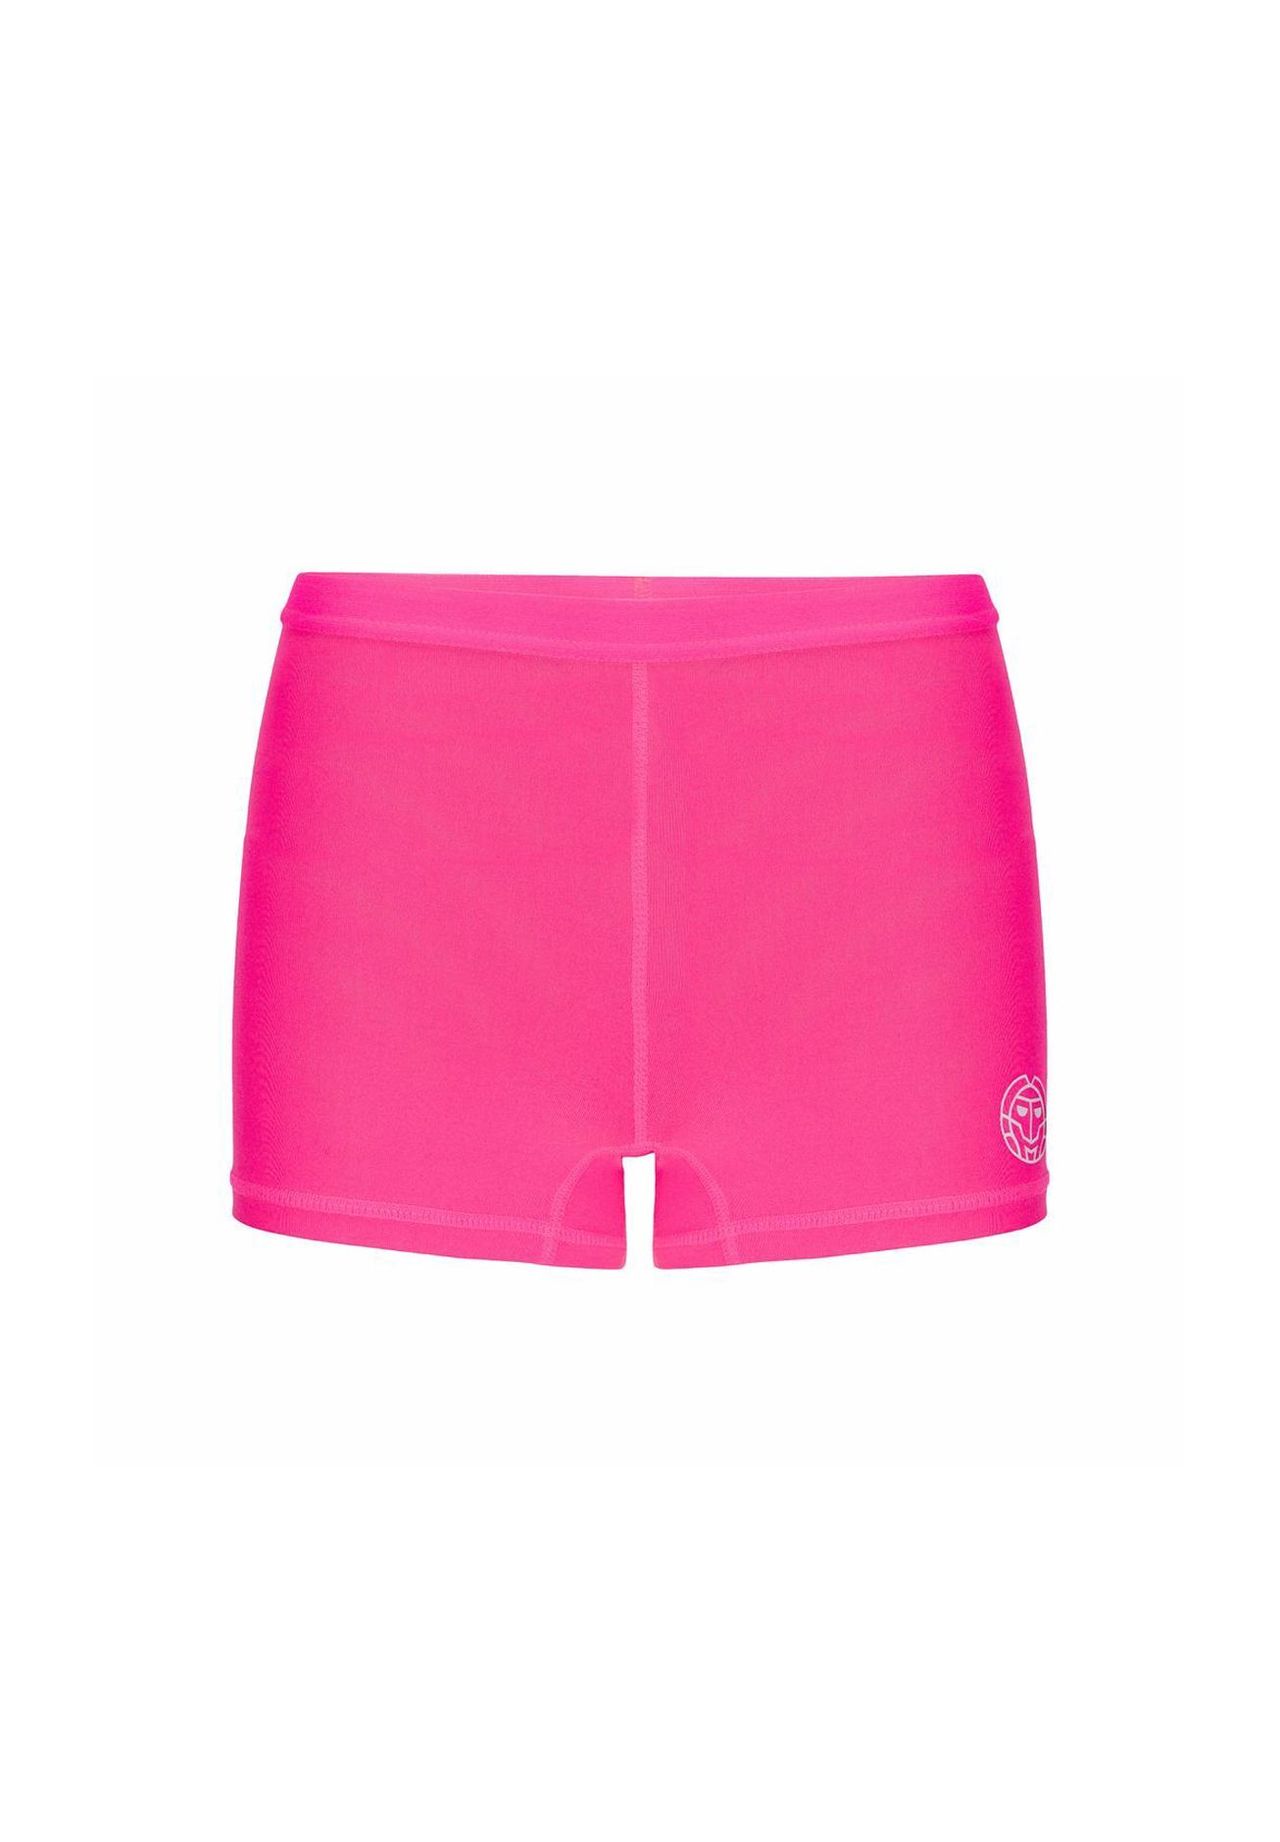 Schwarze shorts pink kaufen GALERIA |